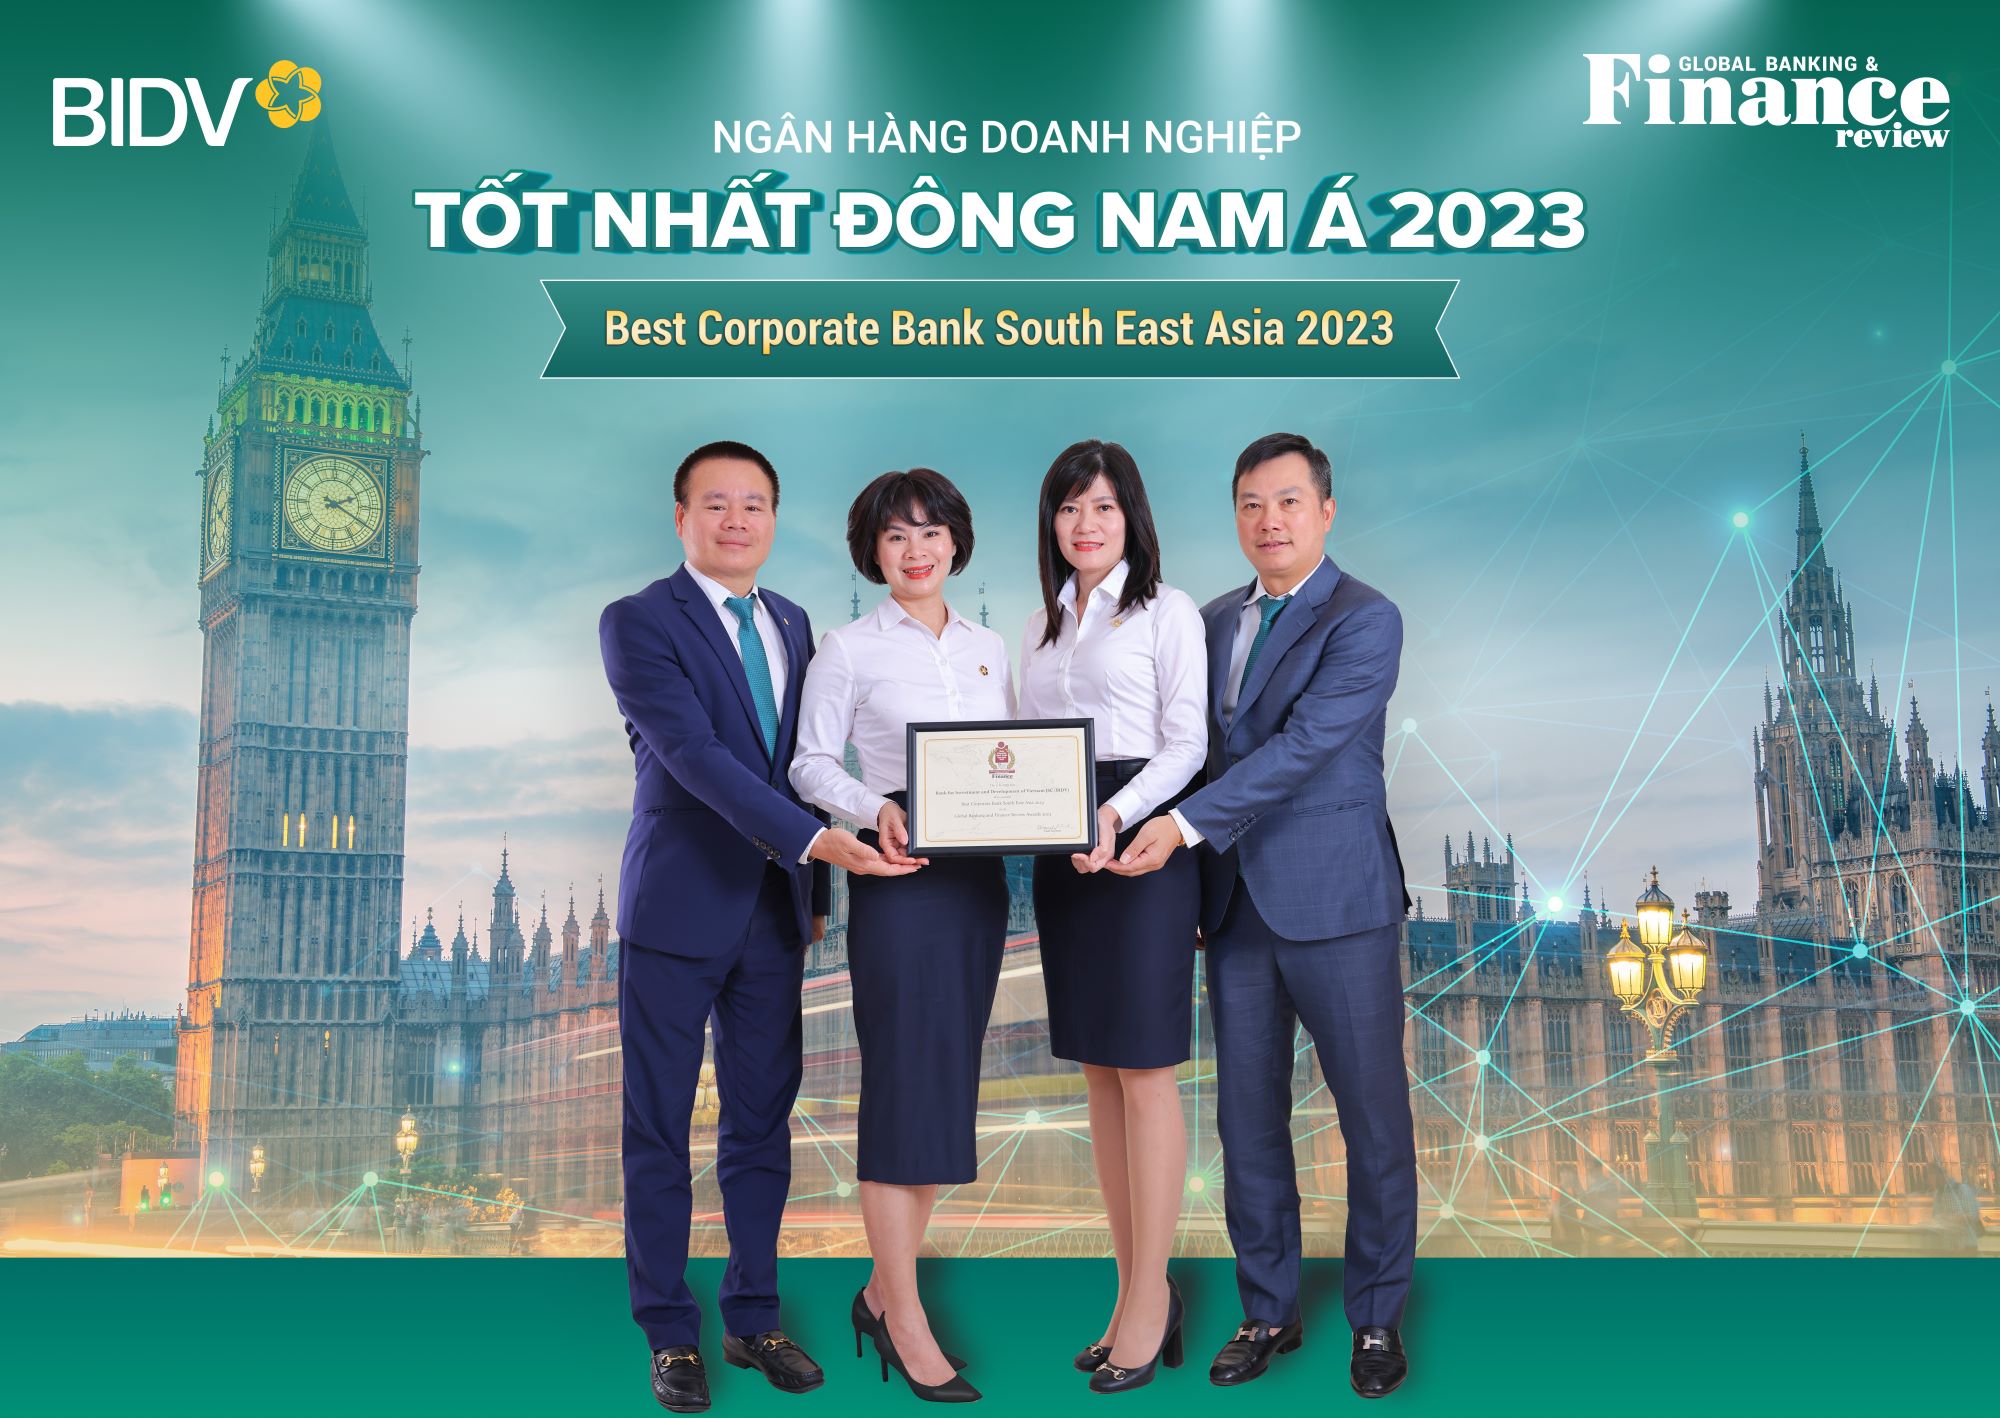 Đại diện BIDV nhận giải thưởng “Ngân hàng Doanh nghiệp tốt nhất Đông Nam Á năm 2023”.